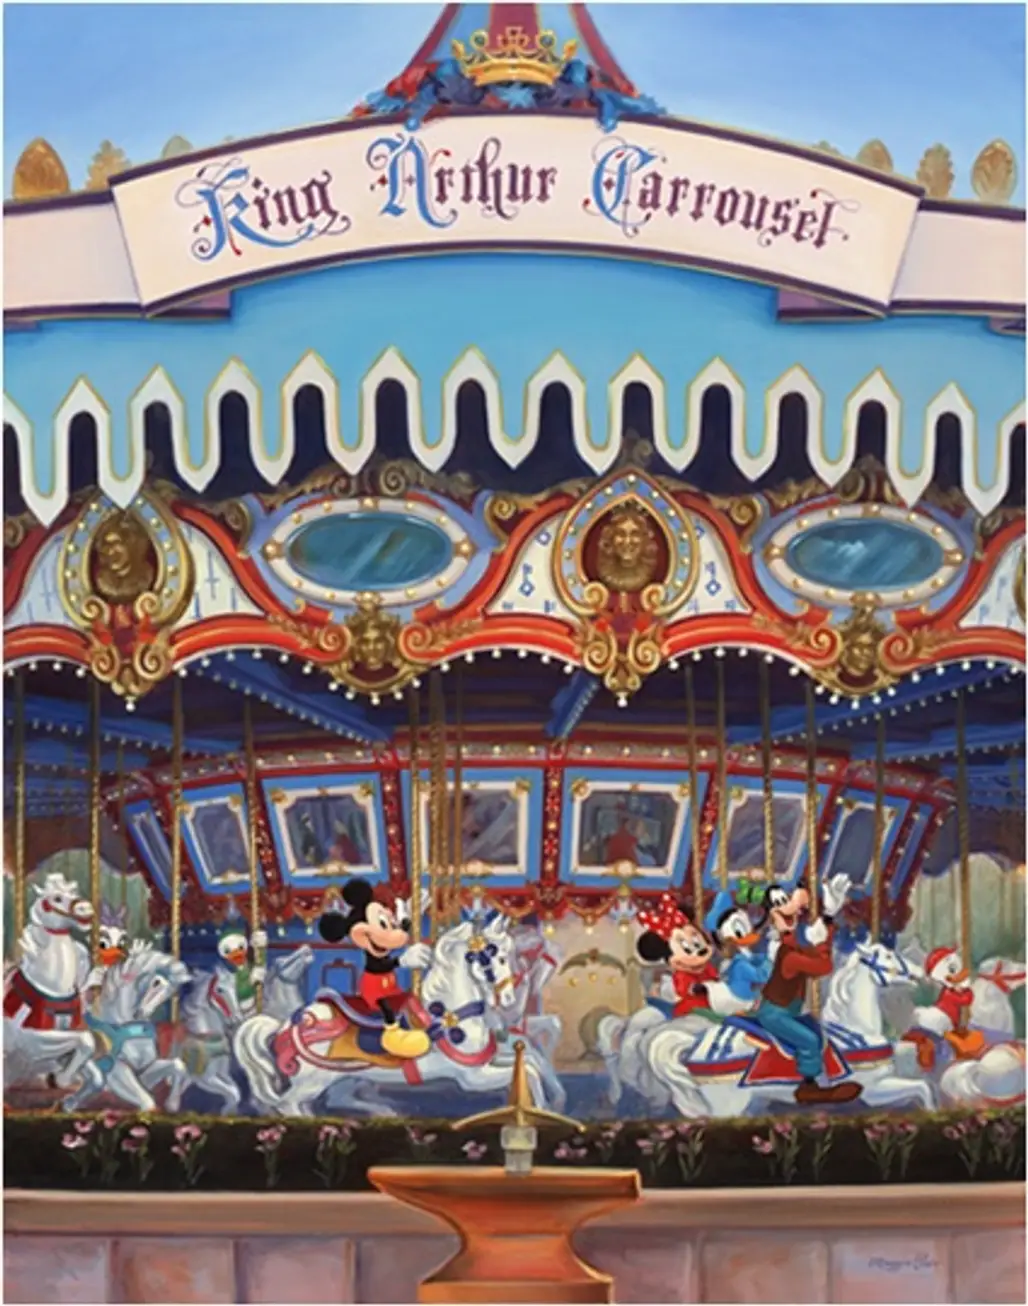 King Arthur Carrousel